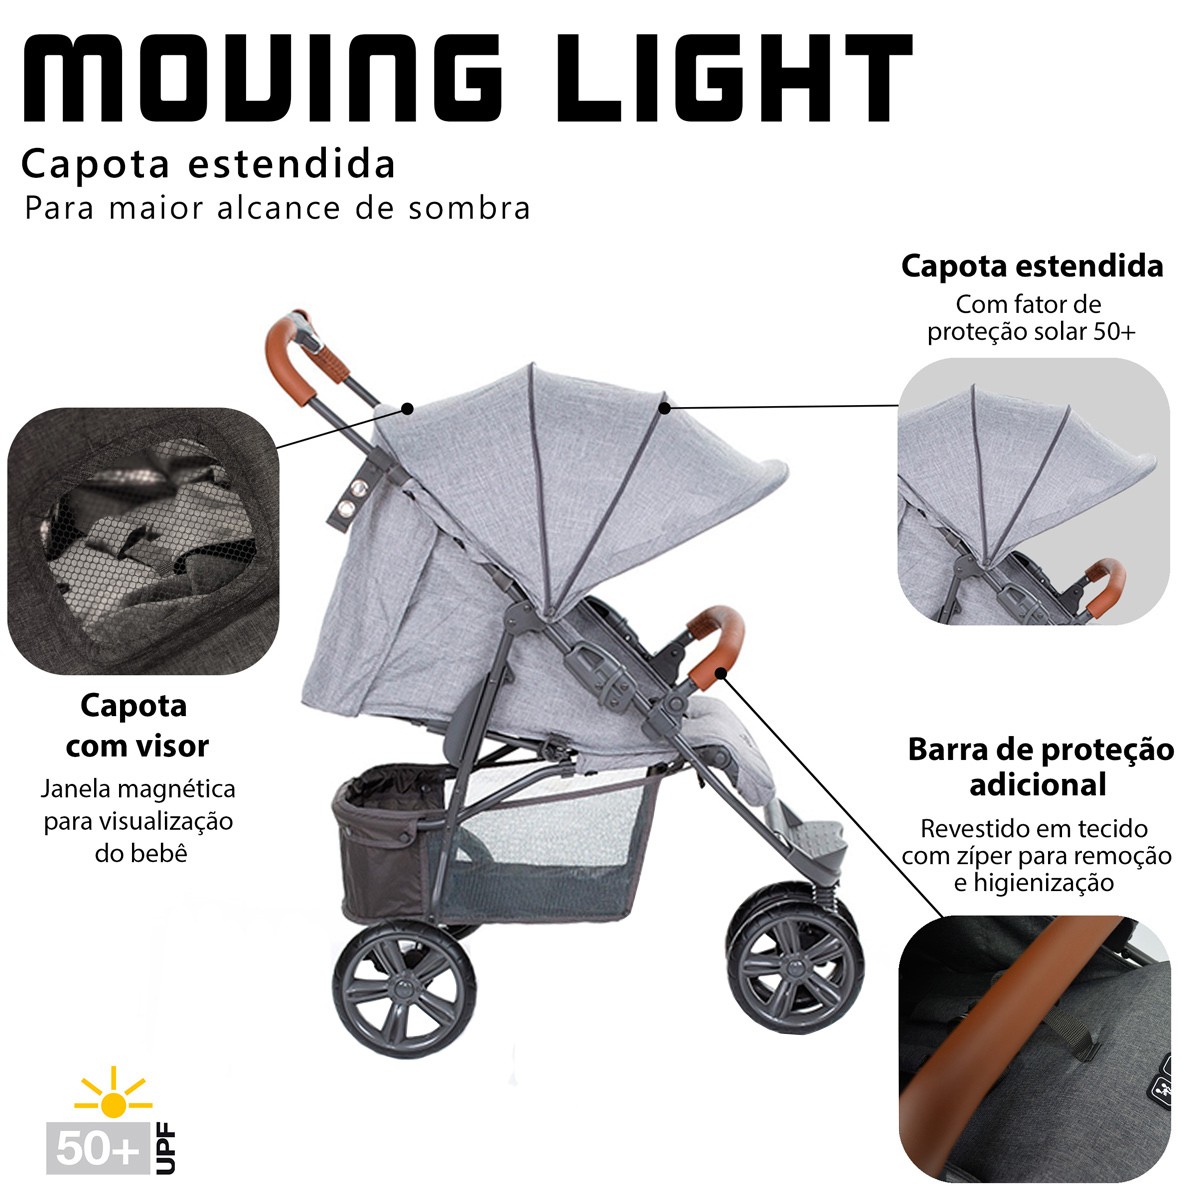 Carrinho de Bebê Passeio Reclinavel 4 Posições Função Berço 6 Meses Até 15 Kg Moving Light Woven Grey Com Couro Abc Design